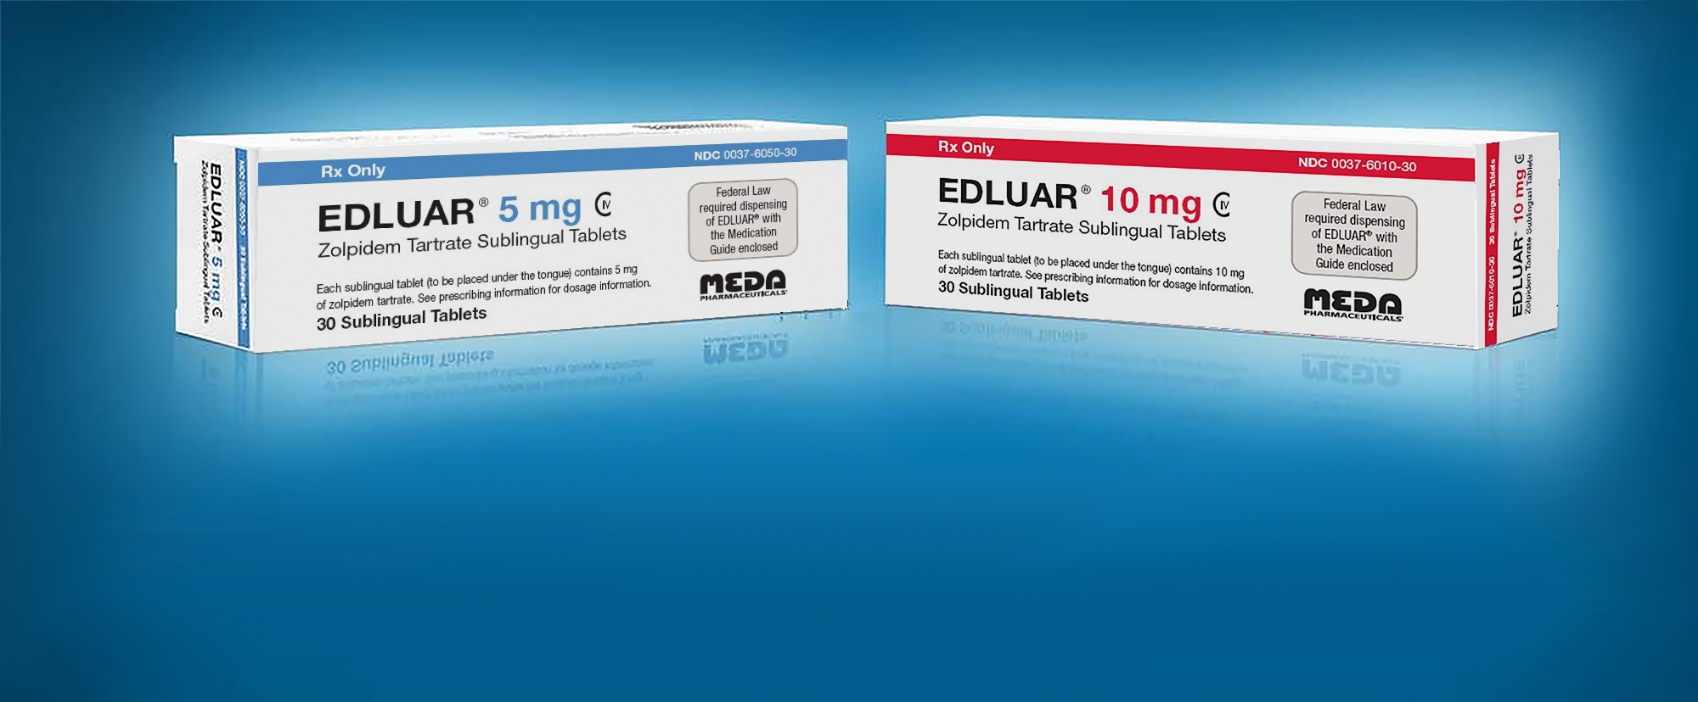 EDLUAR pack shot images for 2 different dosage strengths